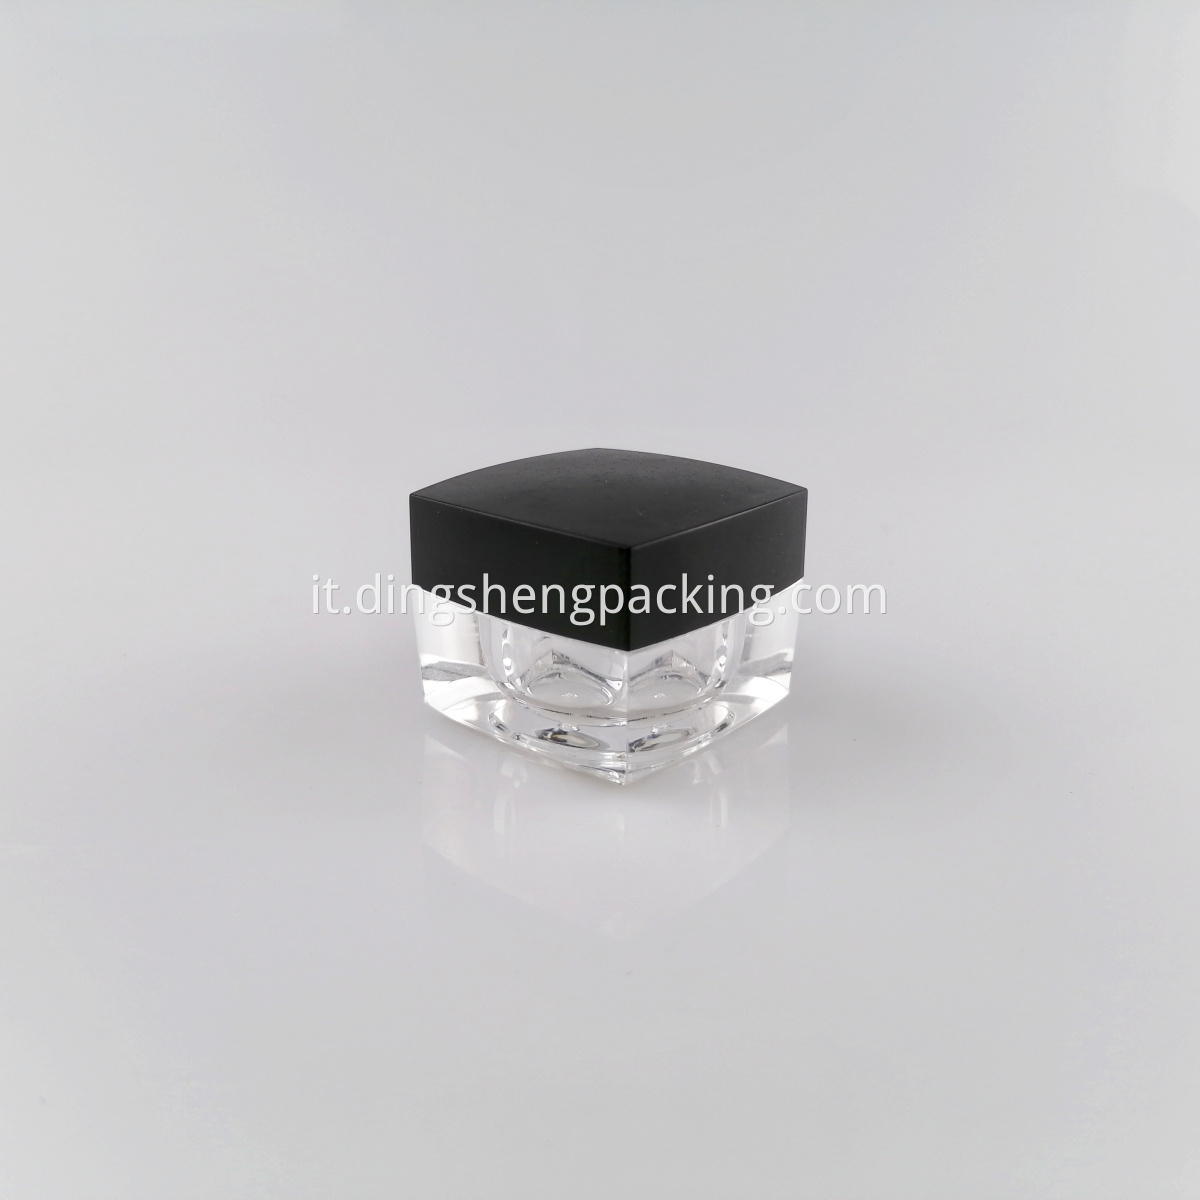 Square Cosmetic Clear Jar 10g Eye Cream Jar